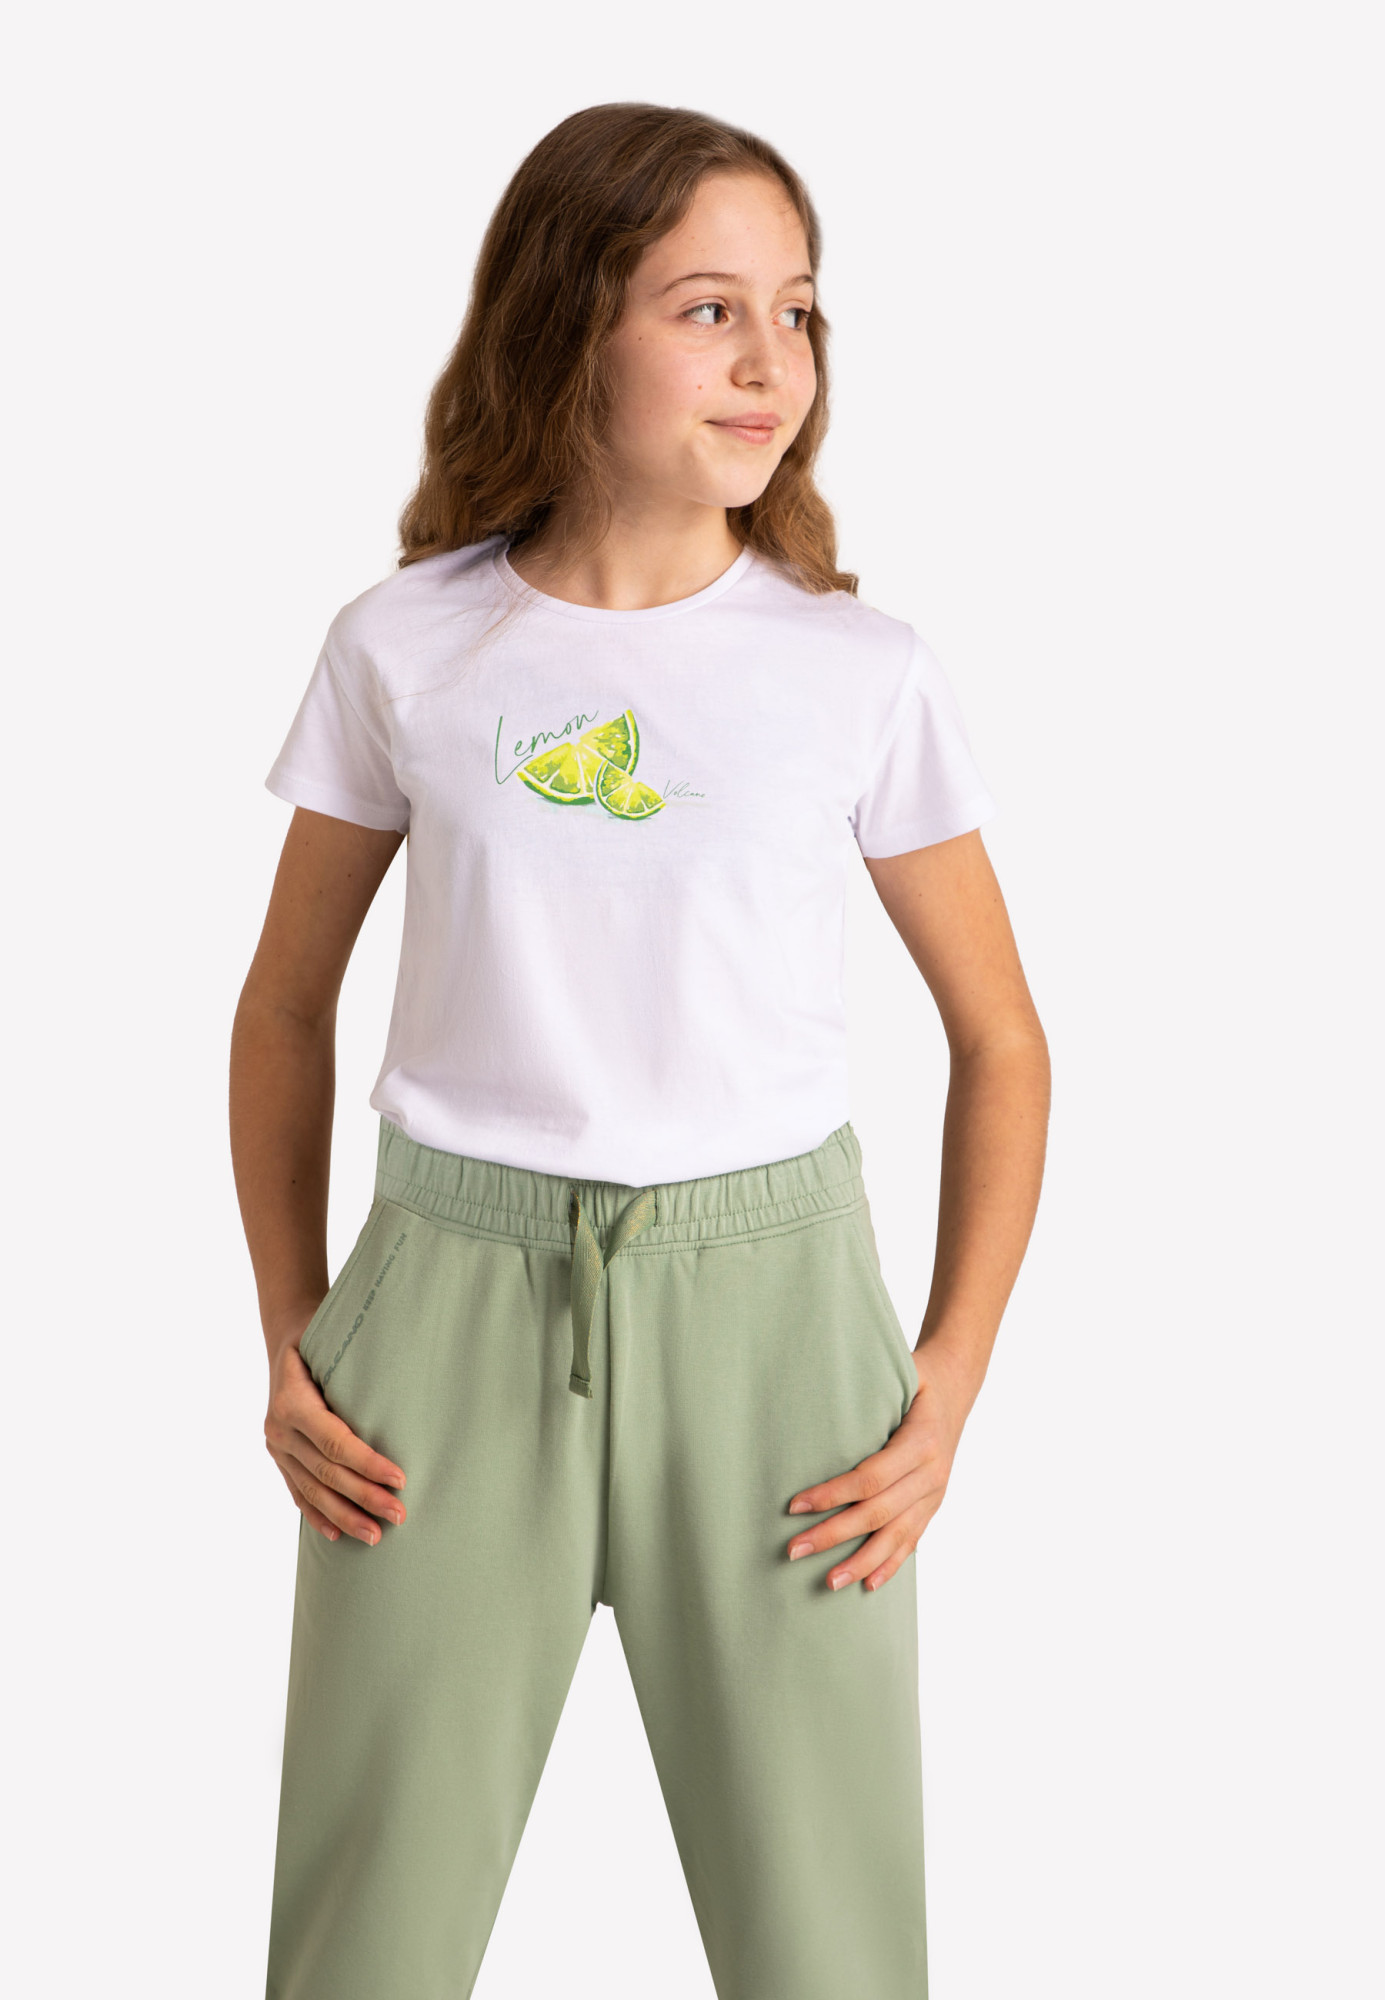 Volcano Regular T-Shirt T-Lemon Junior G02473-S22 White 158/164